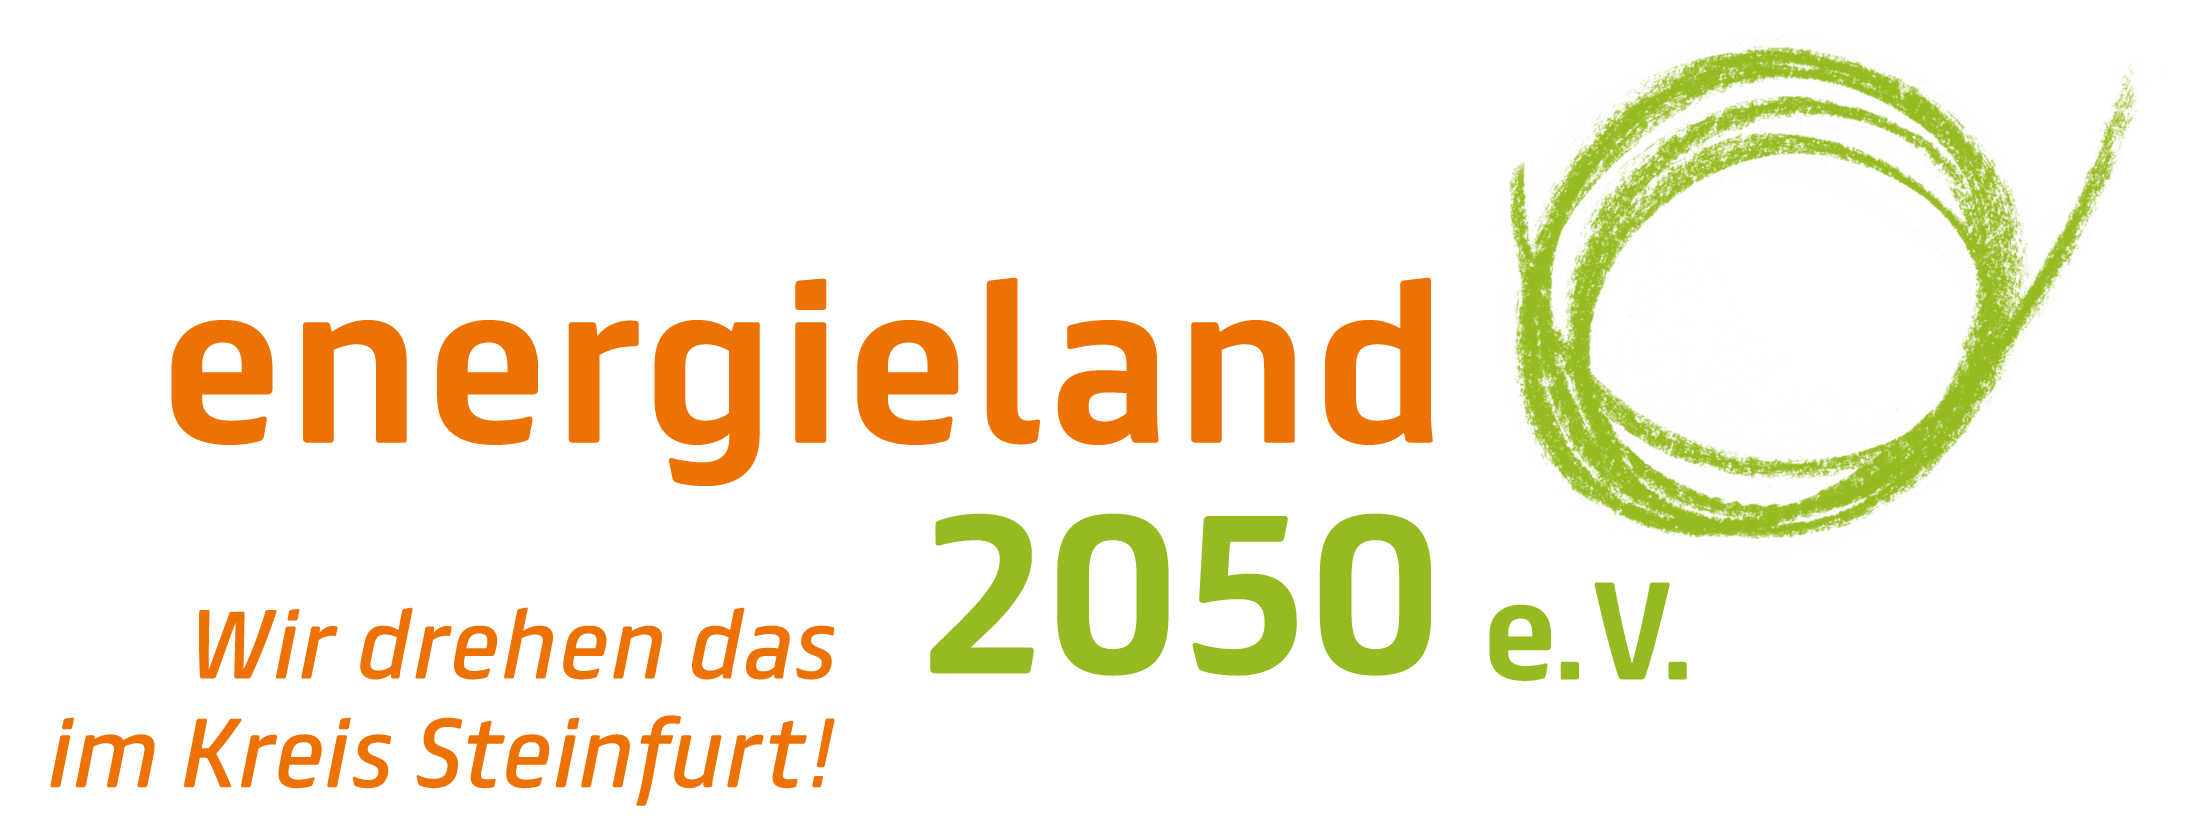 energieland2050